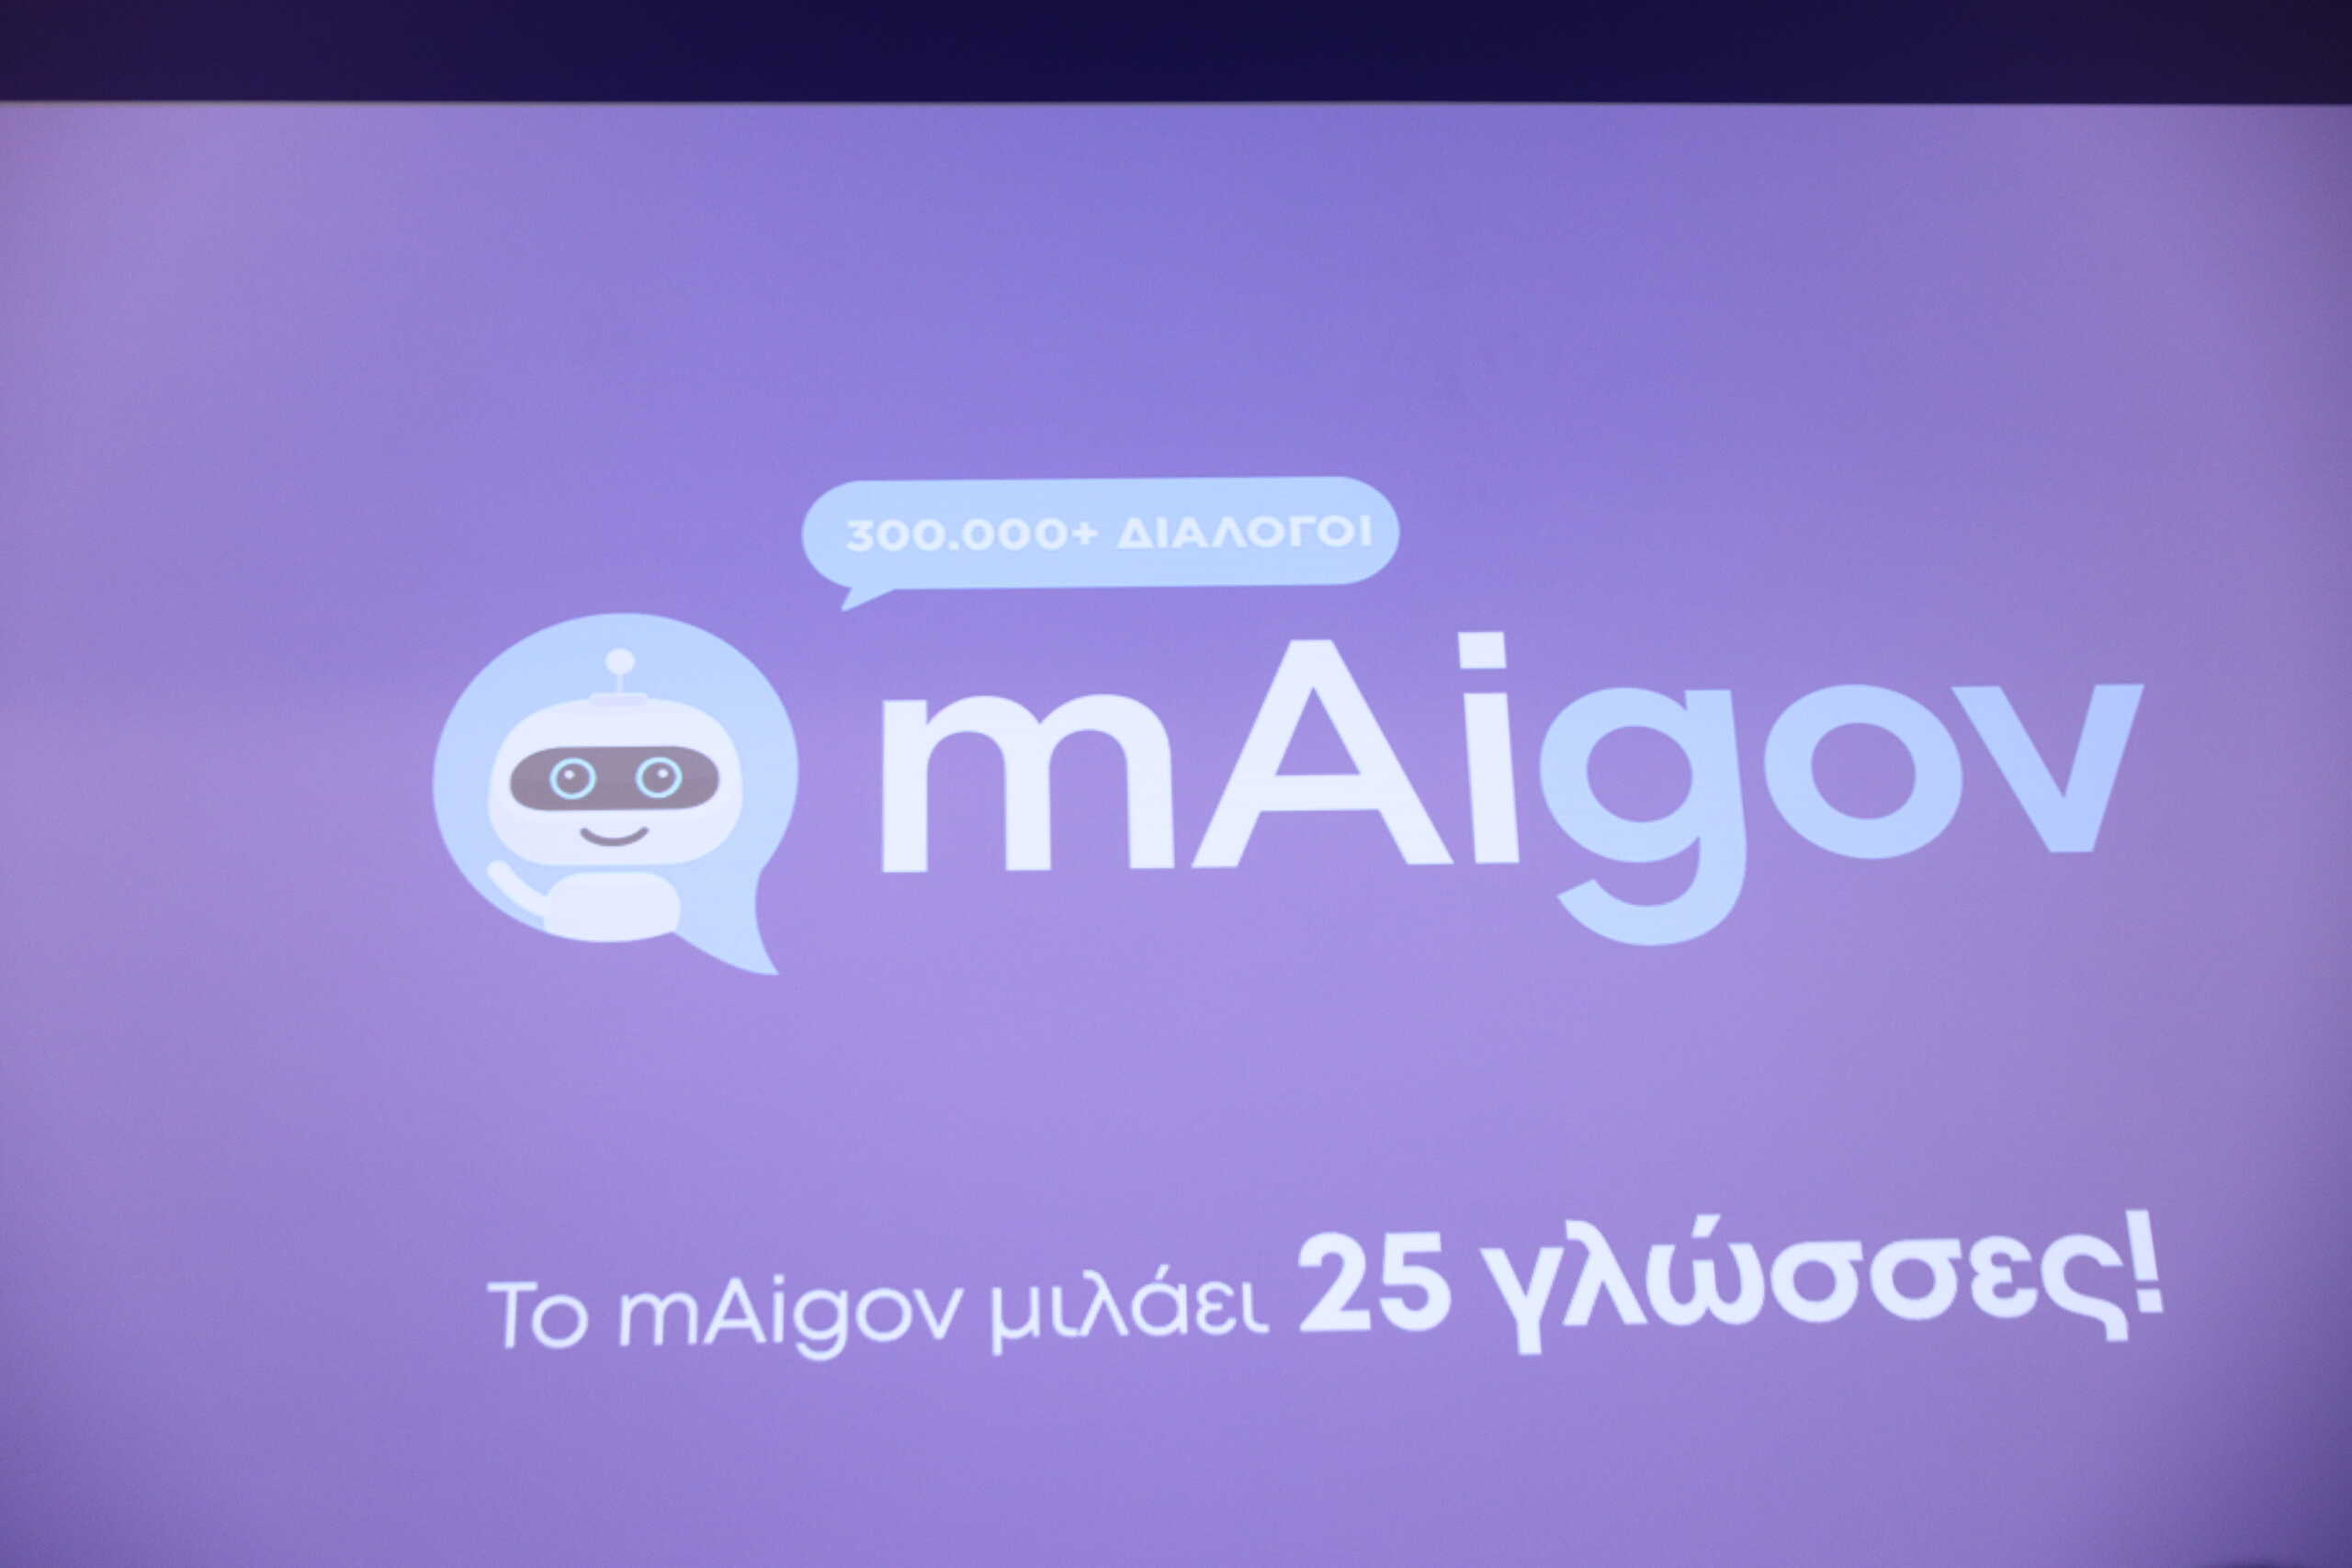 Ο «Ψηφιακός Βοηθός» mAigov μιλάει πλέον 25 γλώσσες – Πώς λειτουργεί η εφαρμογή